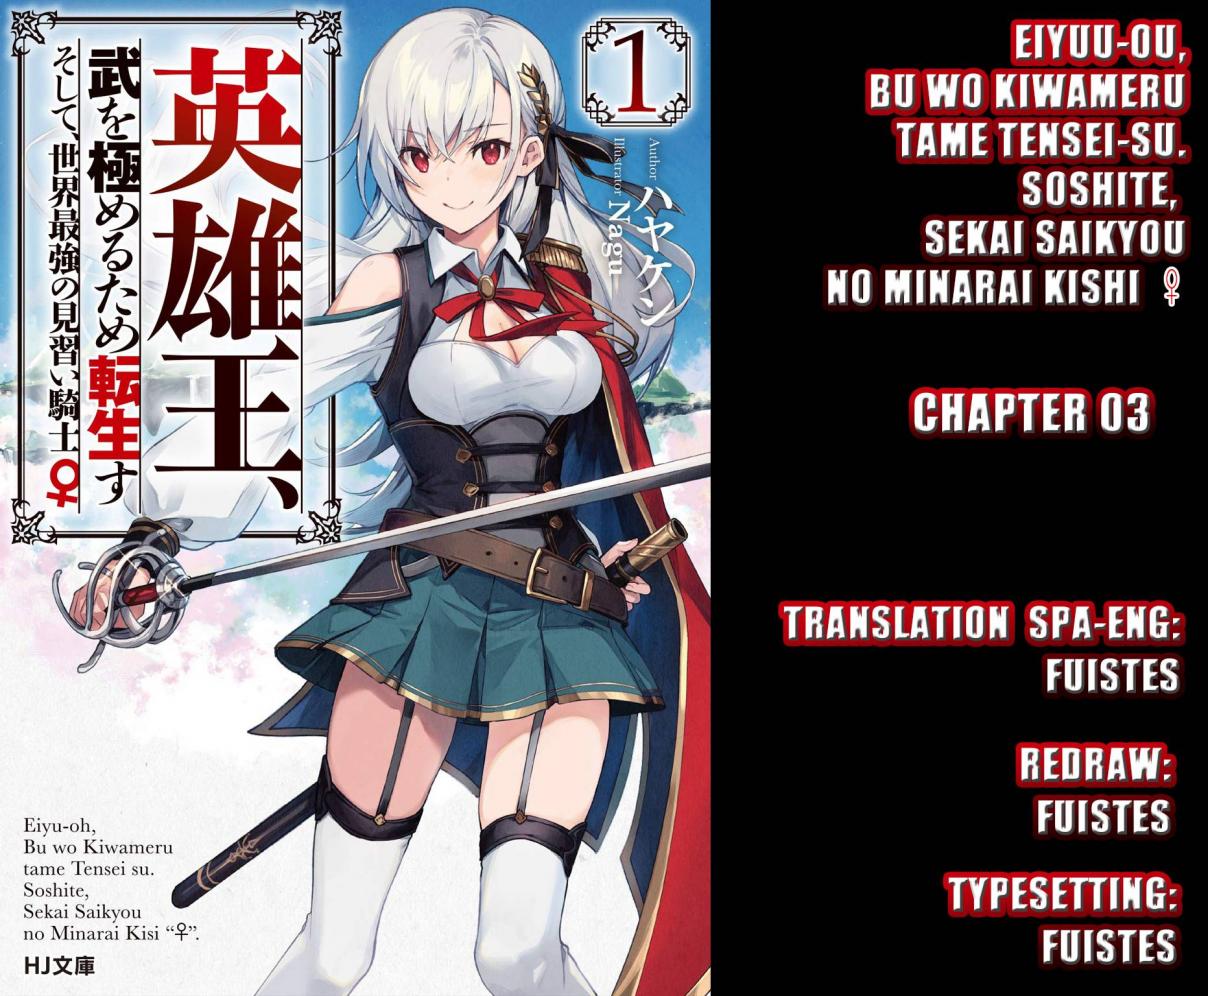 Eiyu Oh, Bu wo Kiwameru Tame Tensei Su, Soshite, Sekai Saikyou no Minarai Kisi Vol. 1 Ch. 3